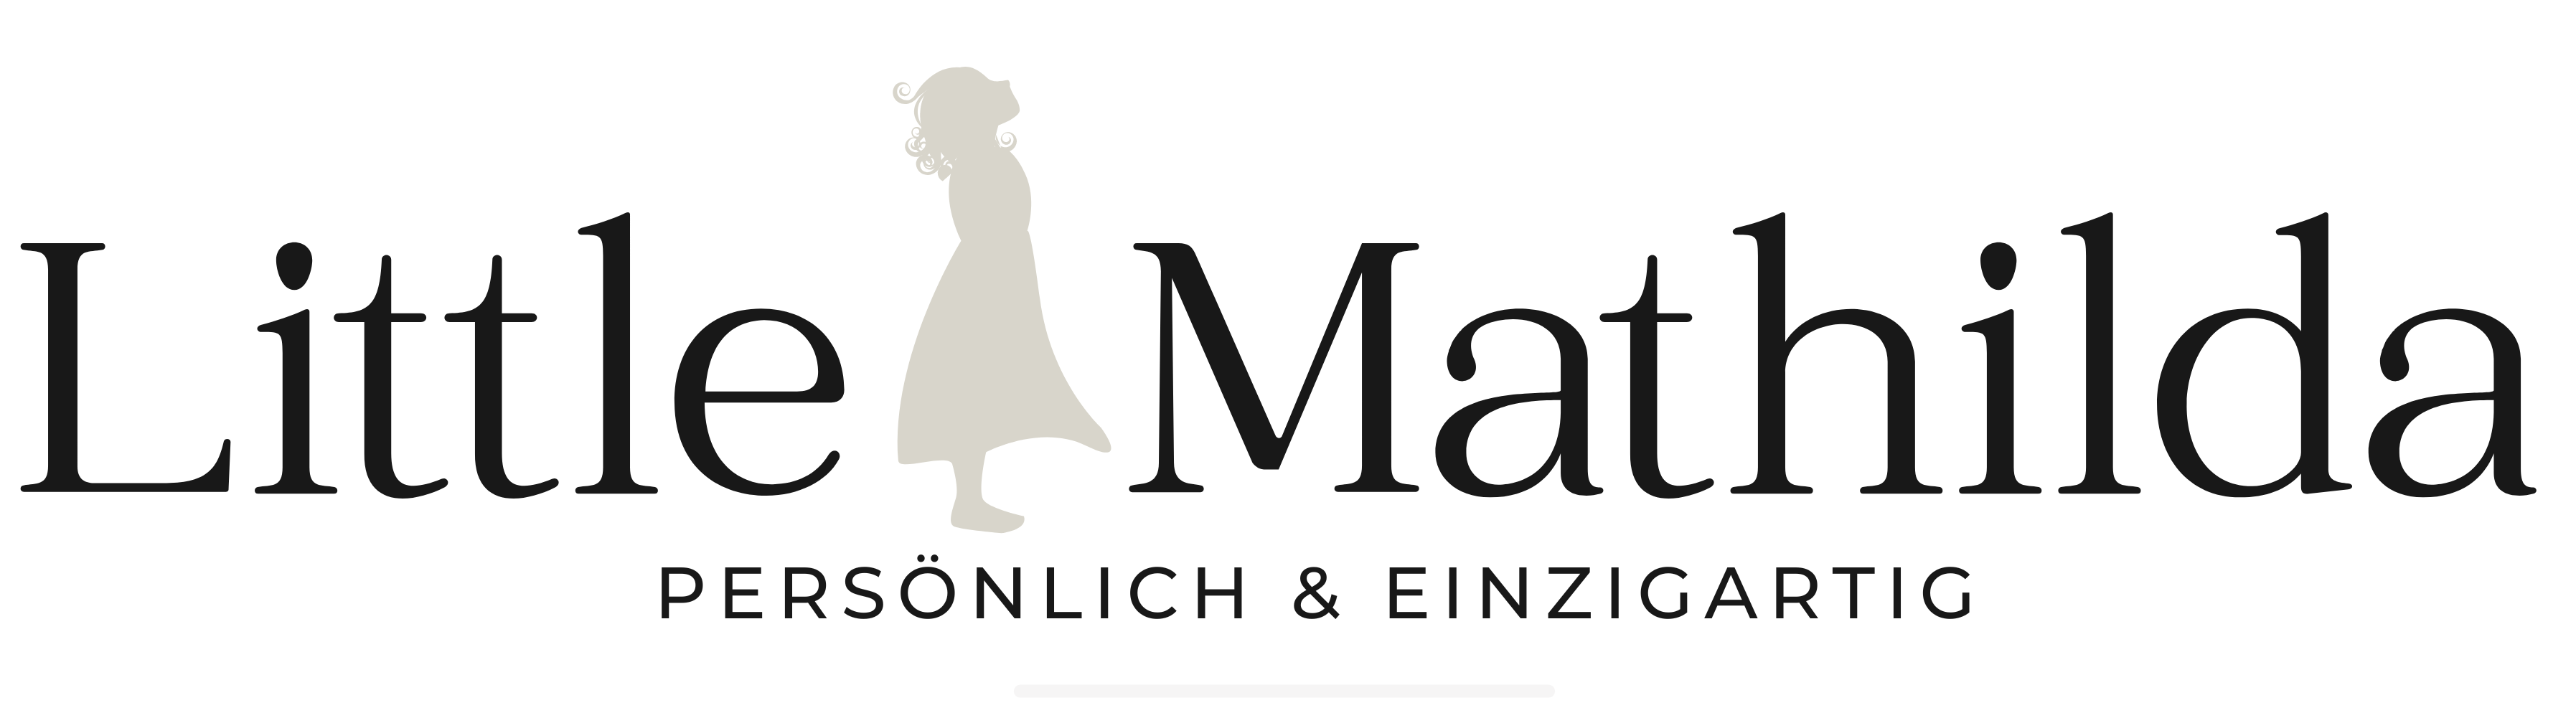 Shopify_Banner_Logo_Little Mathilda persönlich und einzigartig